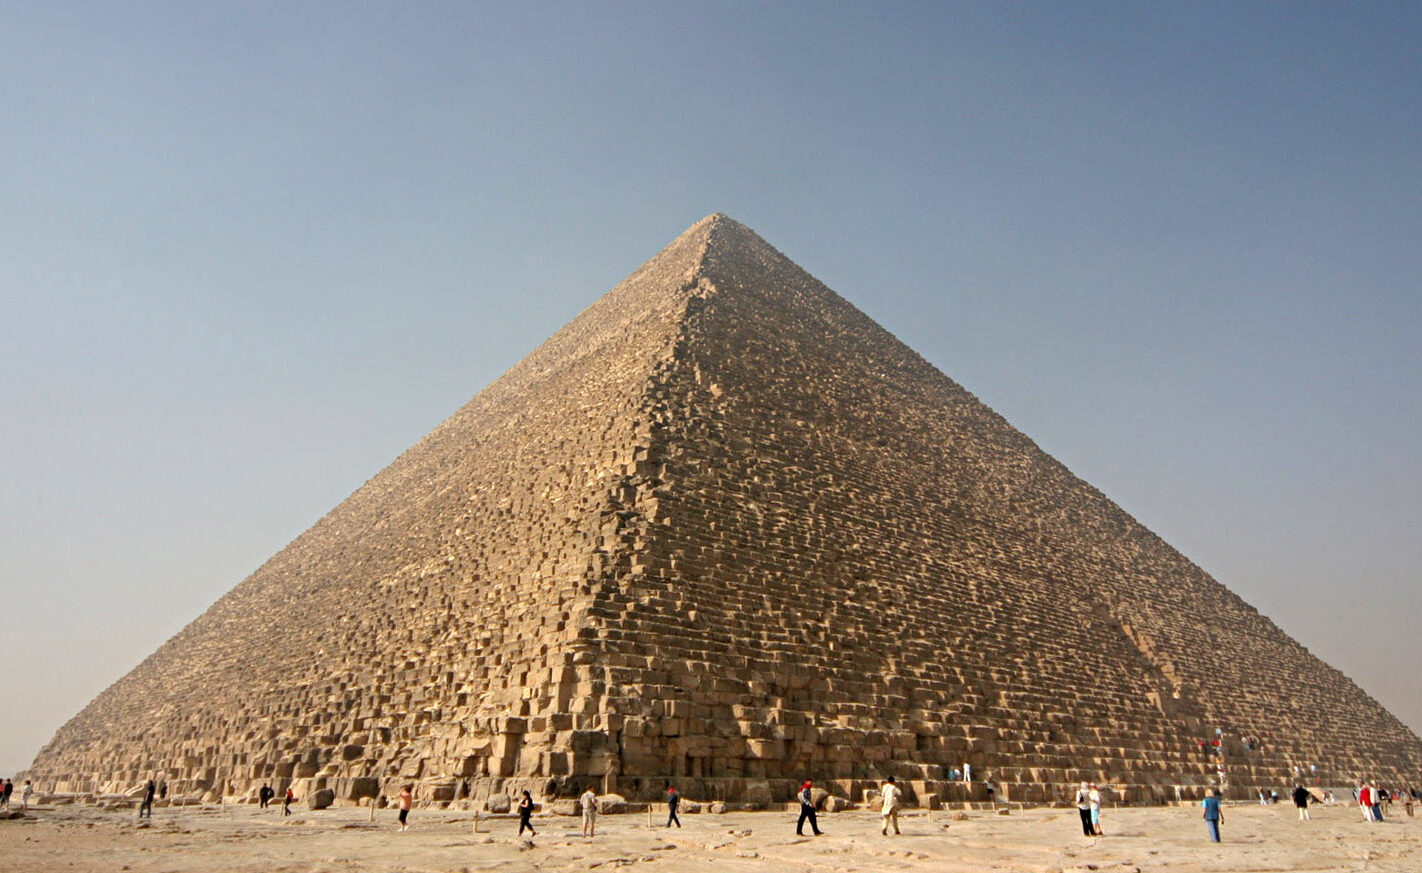 La Gran Pirámide de Keops: El Primero y Más Impresionante Monumento de Egipto